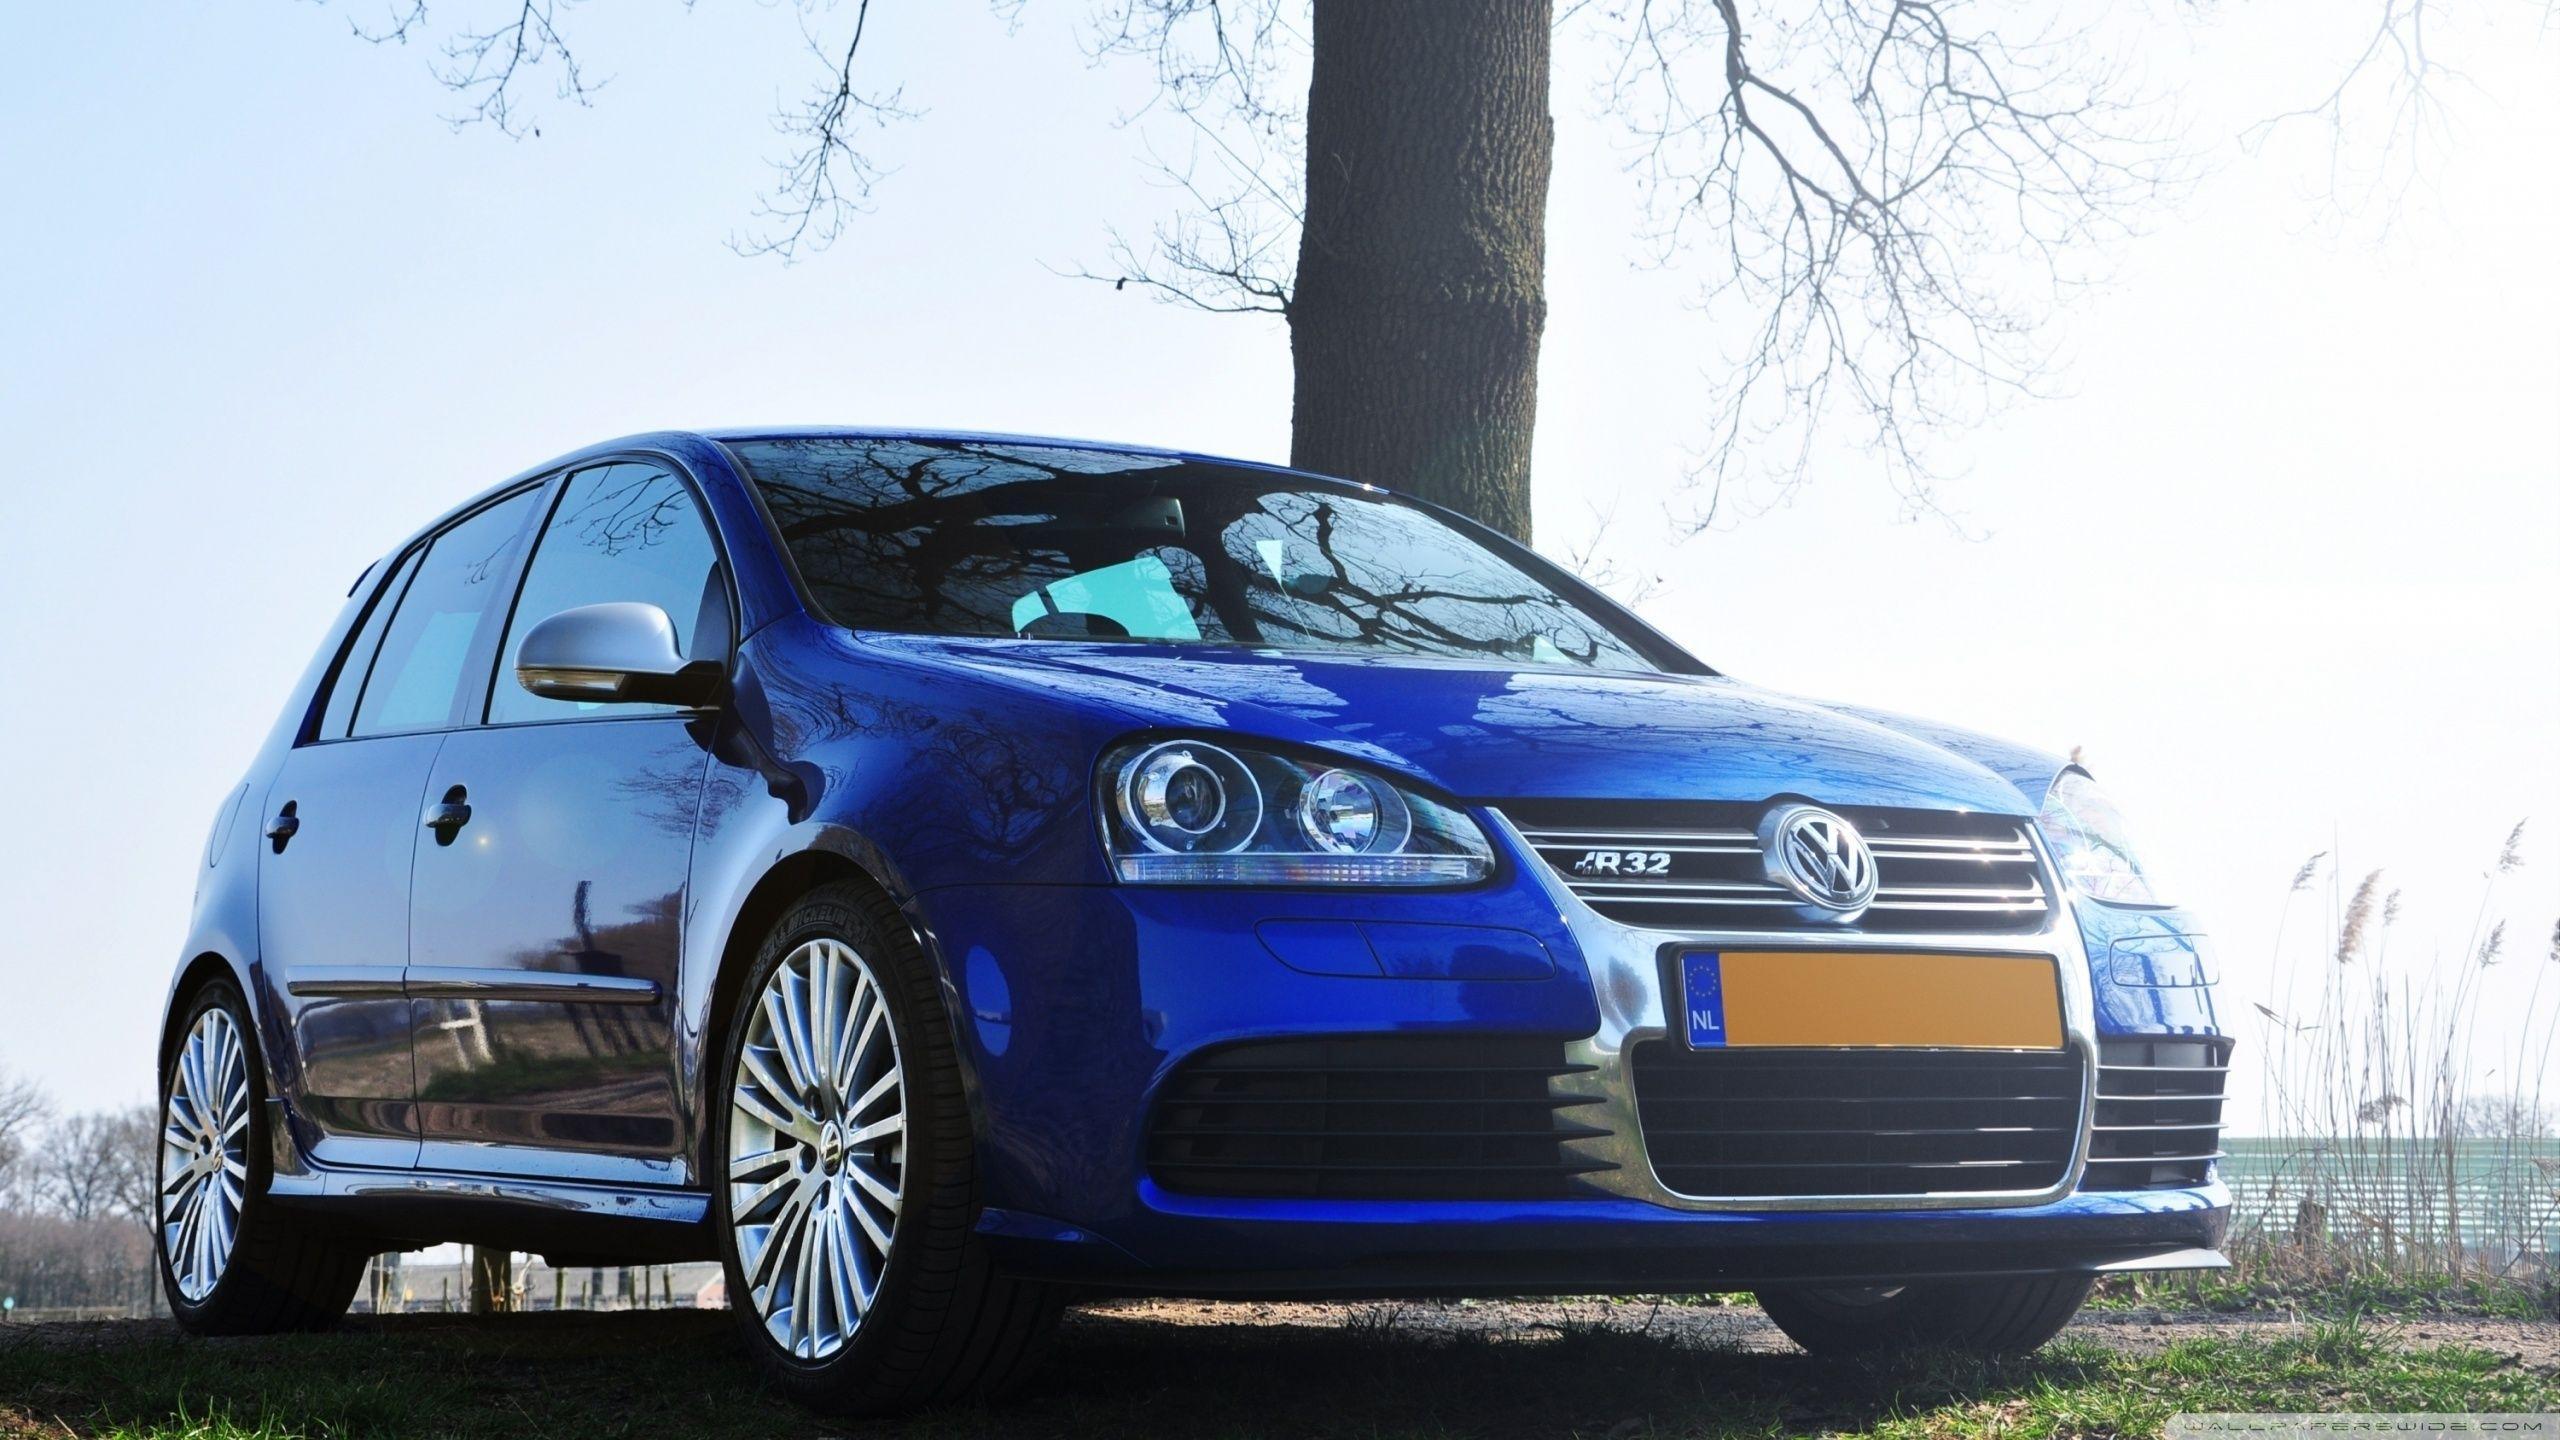 Volkswagen Golf R32 HD desktop wallpaper, Widescreen, High